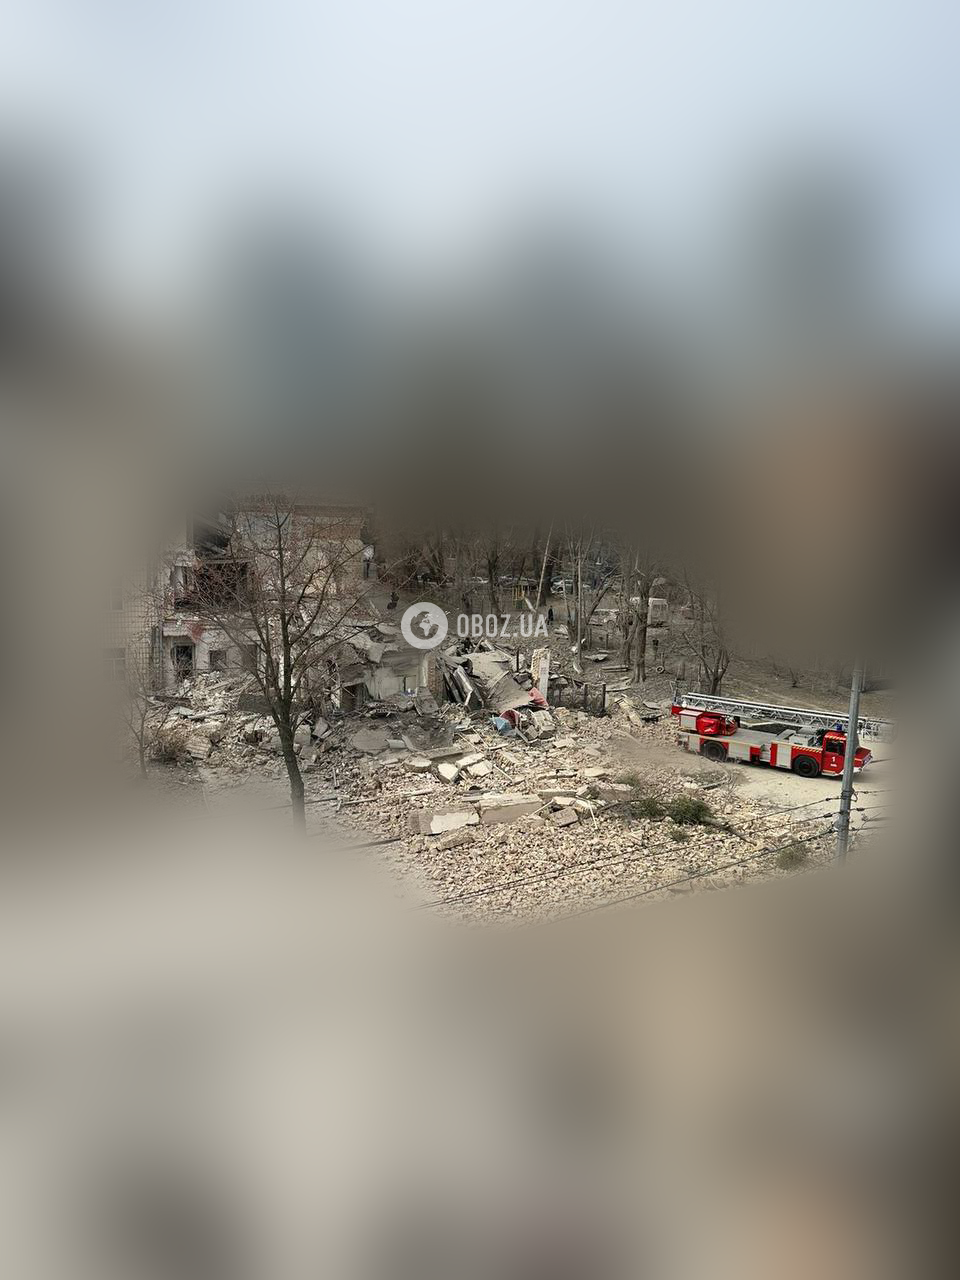 росія атакувала Київ двома балістичними ракетами: у кількох районах падіння уламків на житлові будинки (фото)